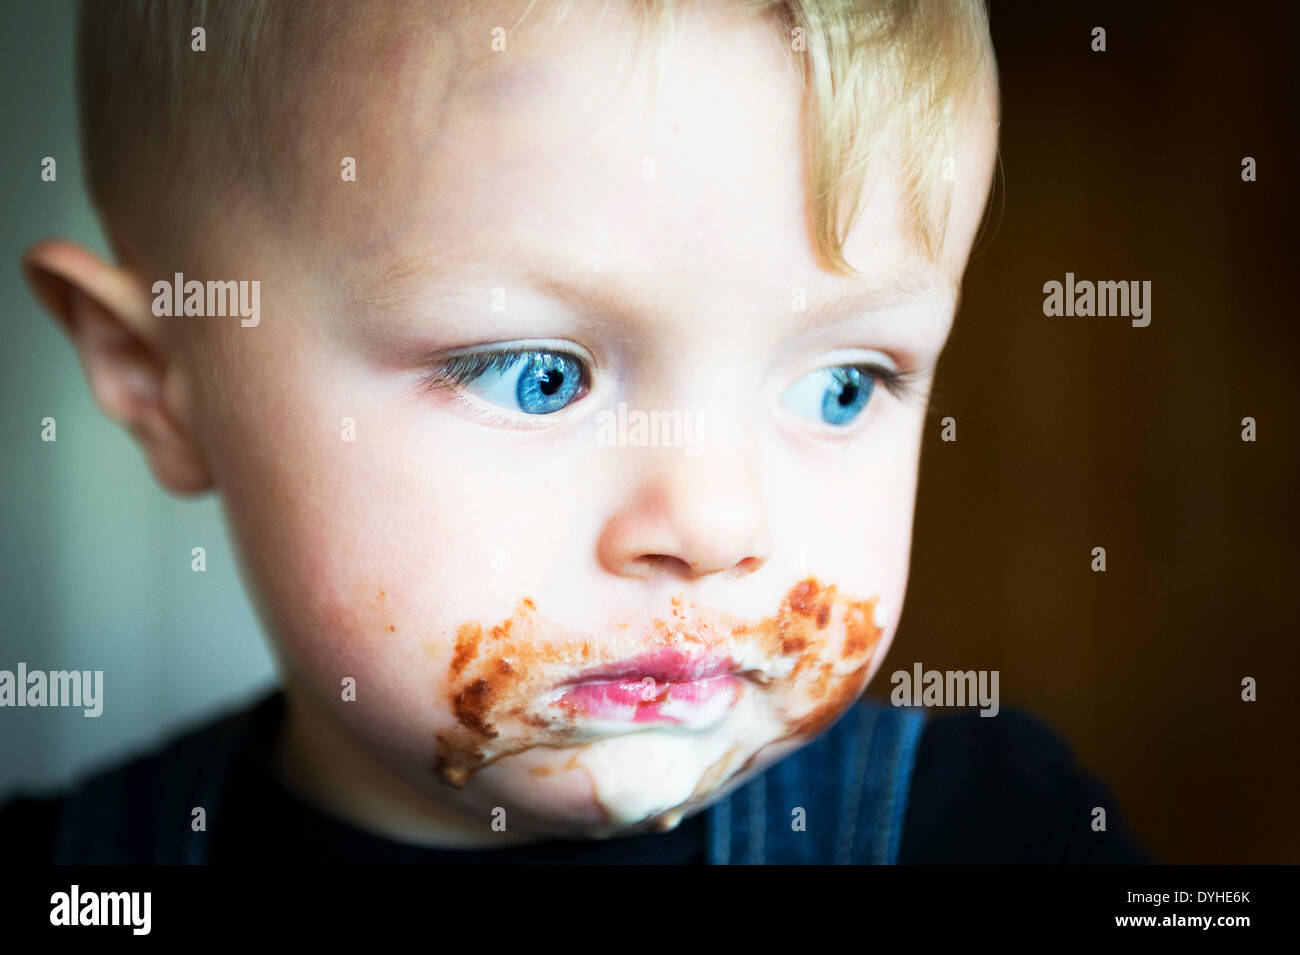 , Basildon Essex. 18 avril 2014. Un garçon de deux ans commence à se sent un peu malade après avoir mangé son chocolat de Pâques traiter. Photographe : Gordon 1928/Alamy Live News Banque D'Images